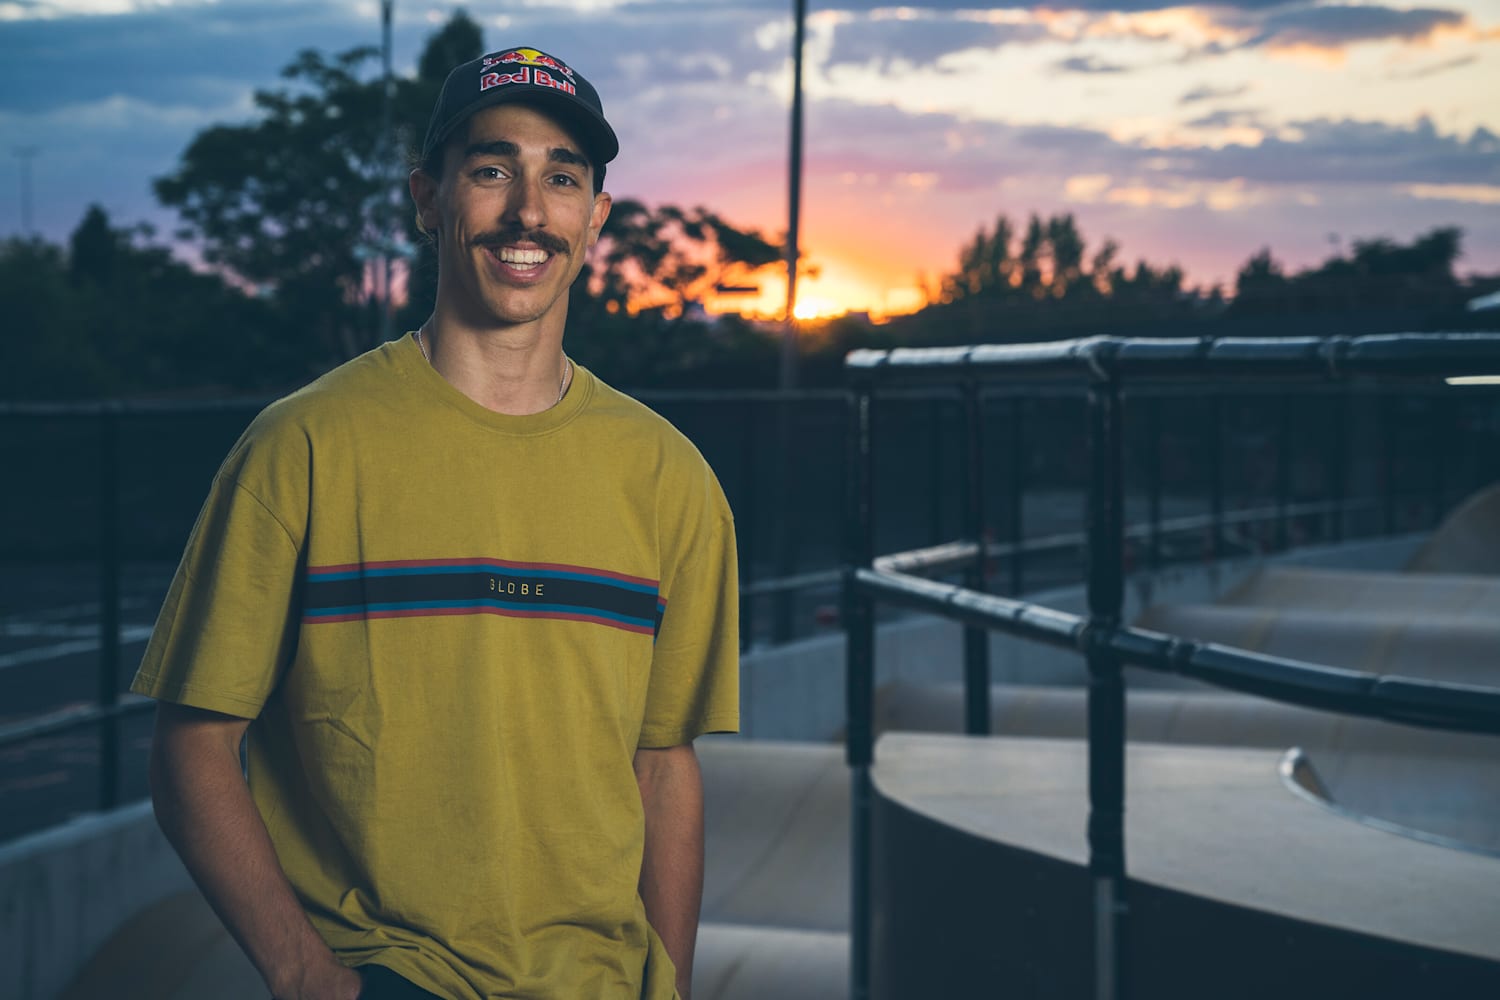 Danny León: Skateboarding – Red Bull Athlete Profile